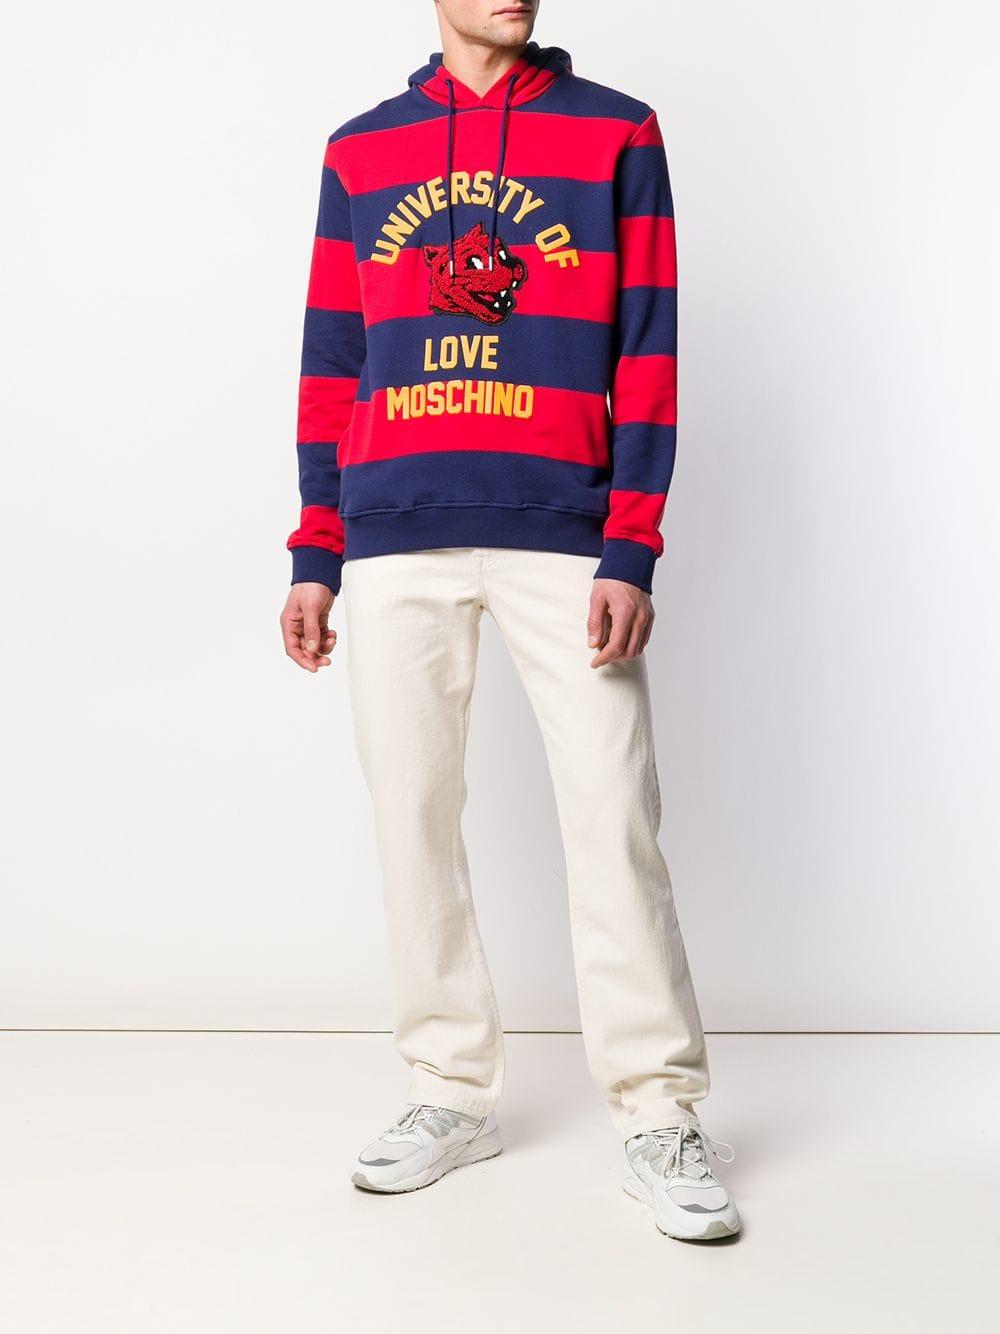 moschino love sweater